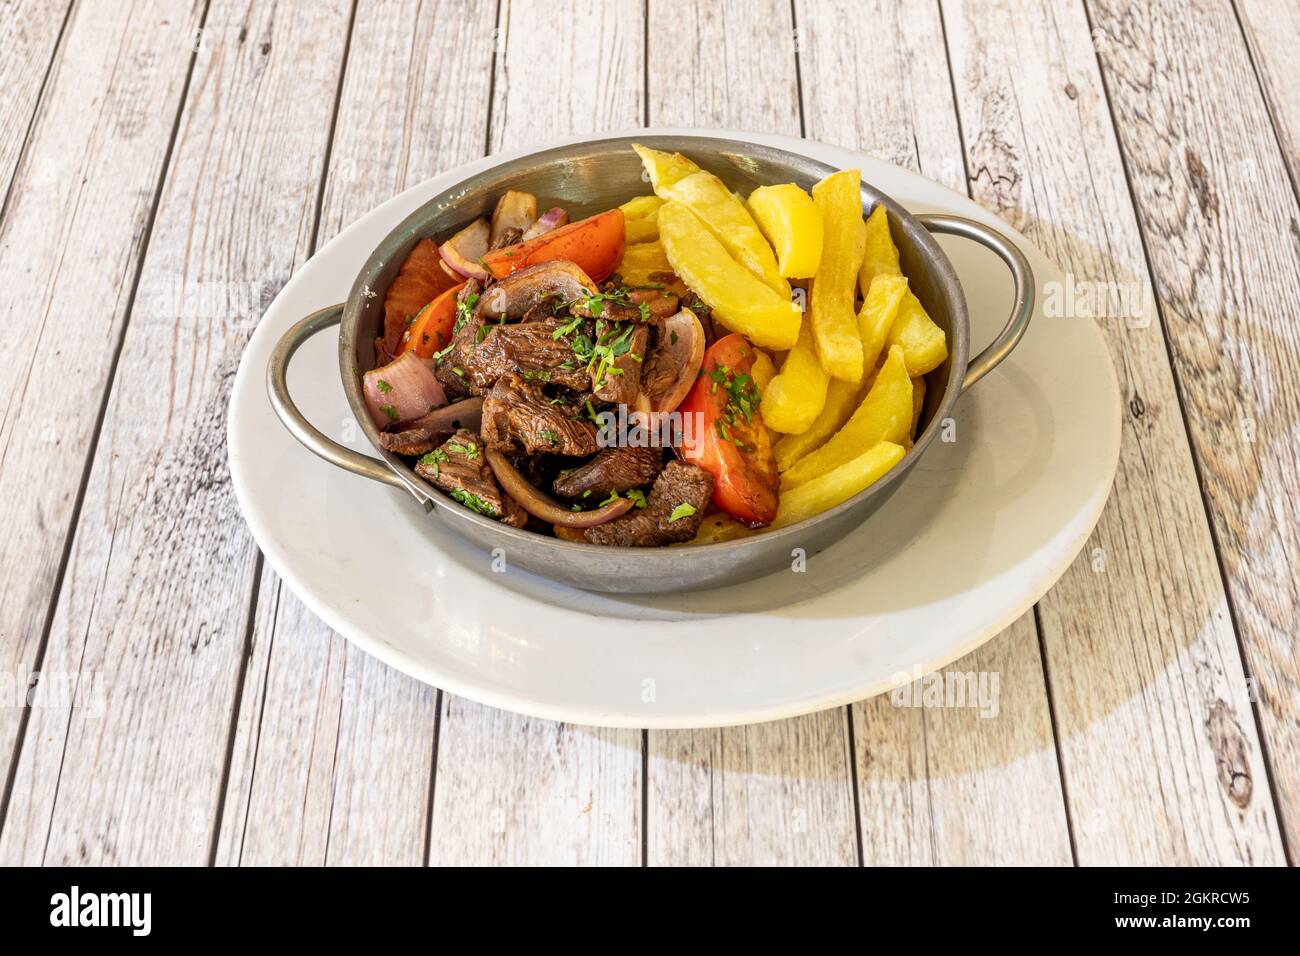 Auflauf aus Metall mit peruanischem Rezept für gebratenes Filet mit Gemüse, Tomaten, Zwiebeln und einer Garnierung aus hausgemachten Chips Stockfoto